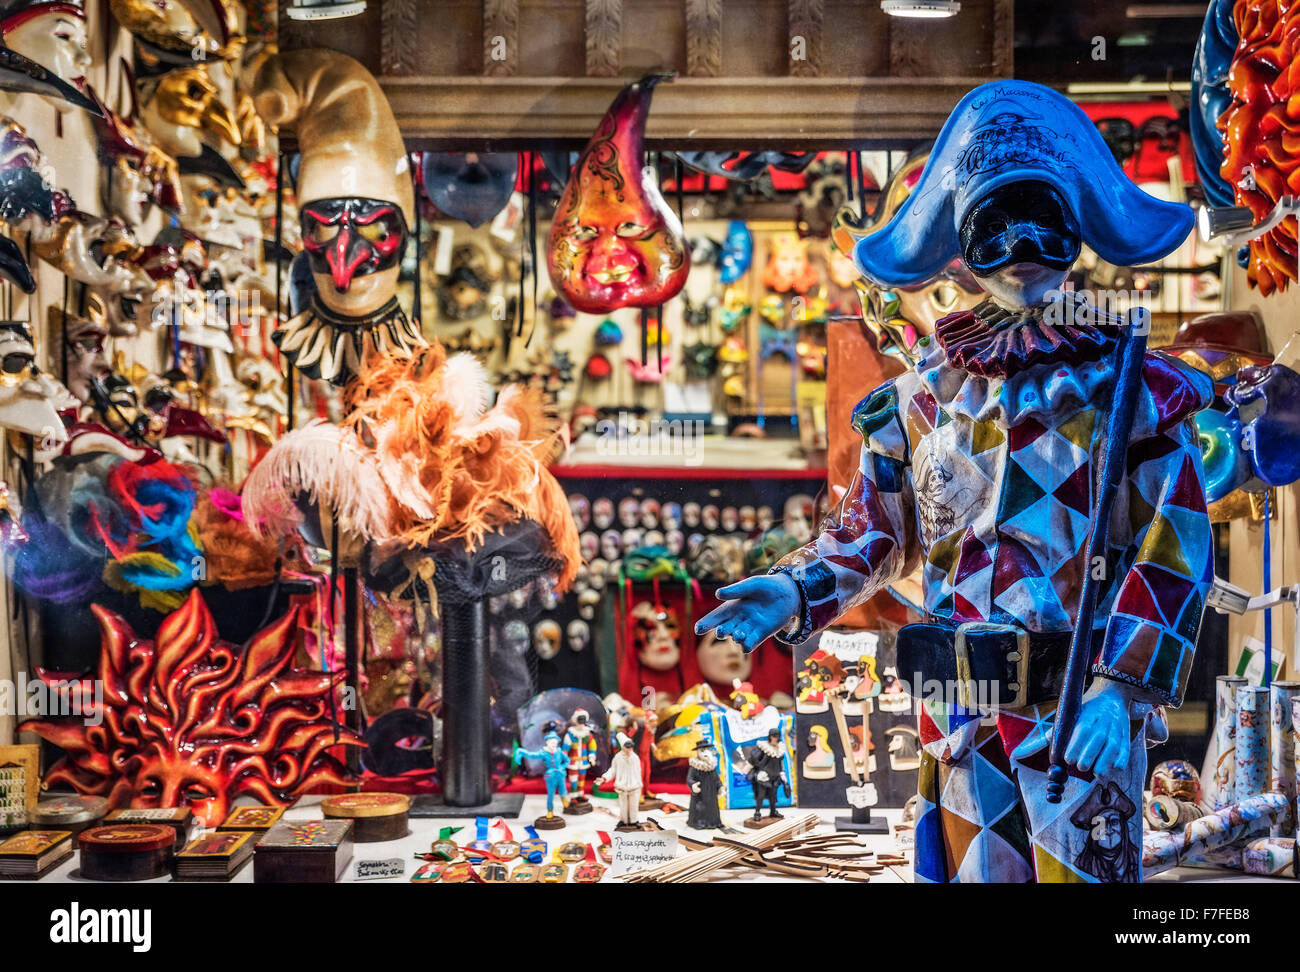 Carnevale boutique de souvenirs, Venise, Italie Banque D'Images